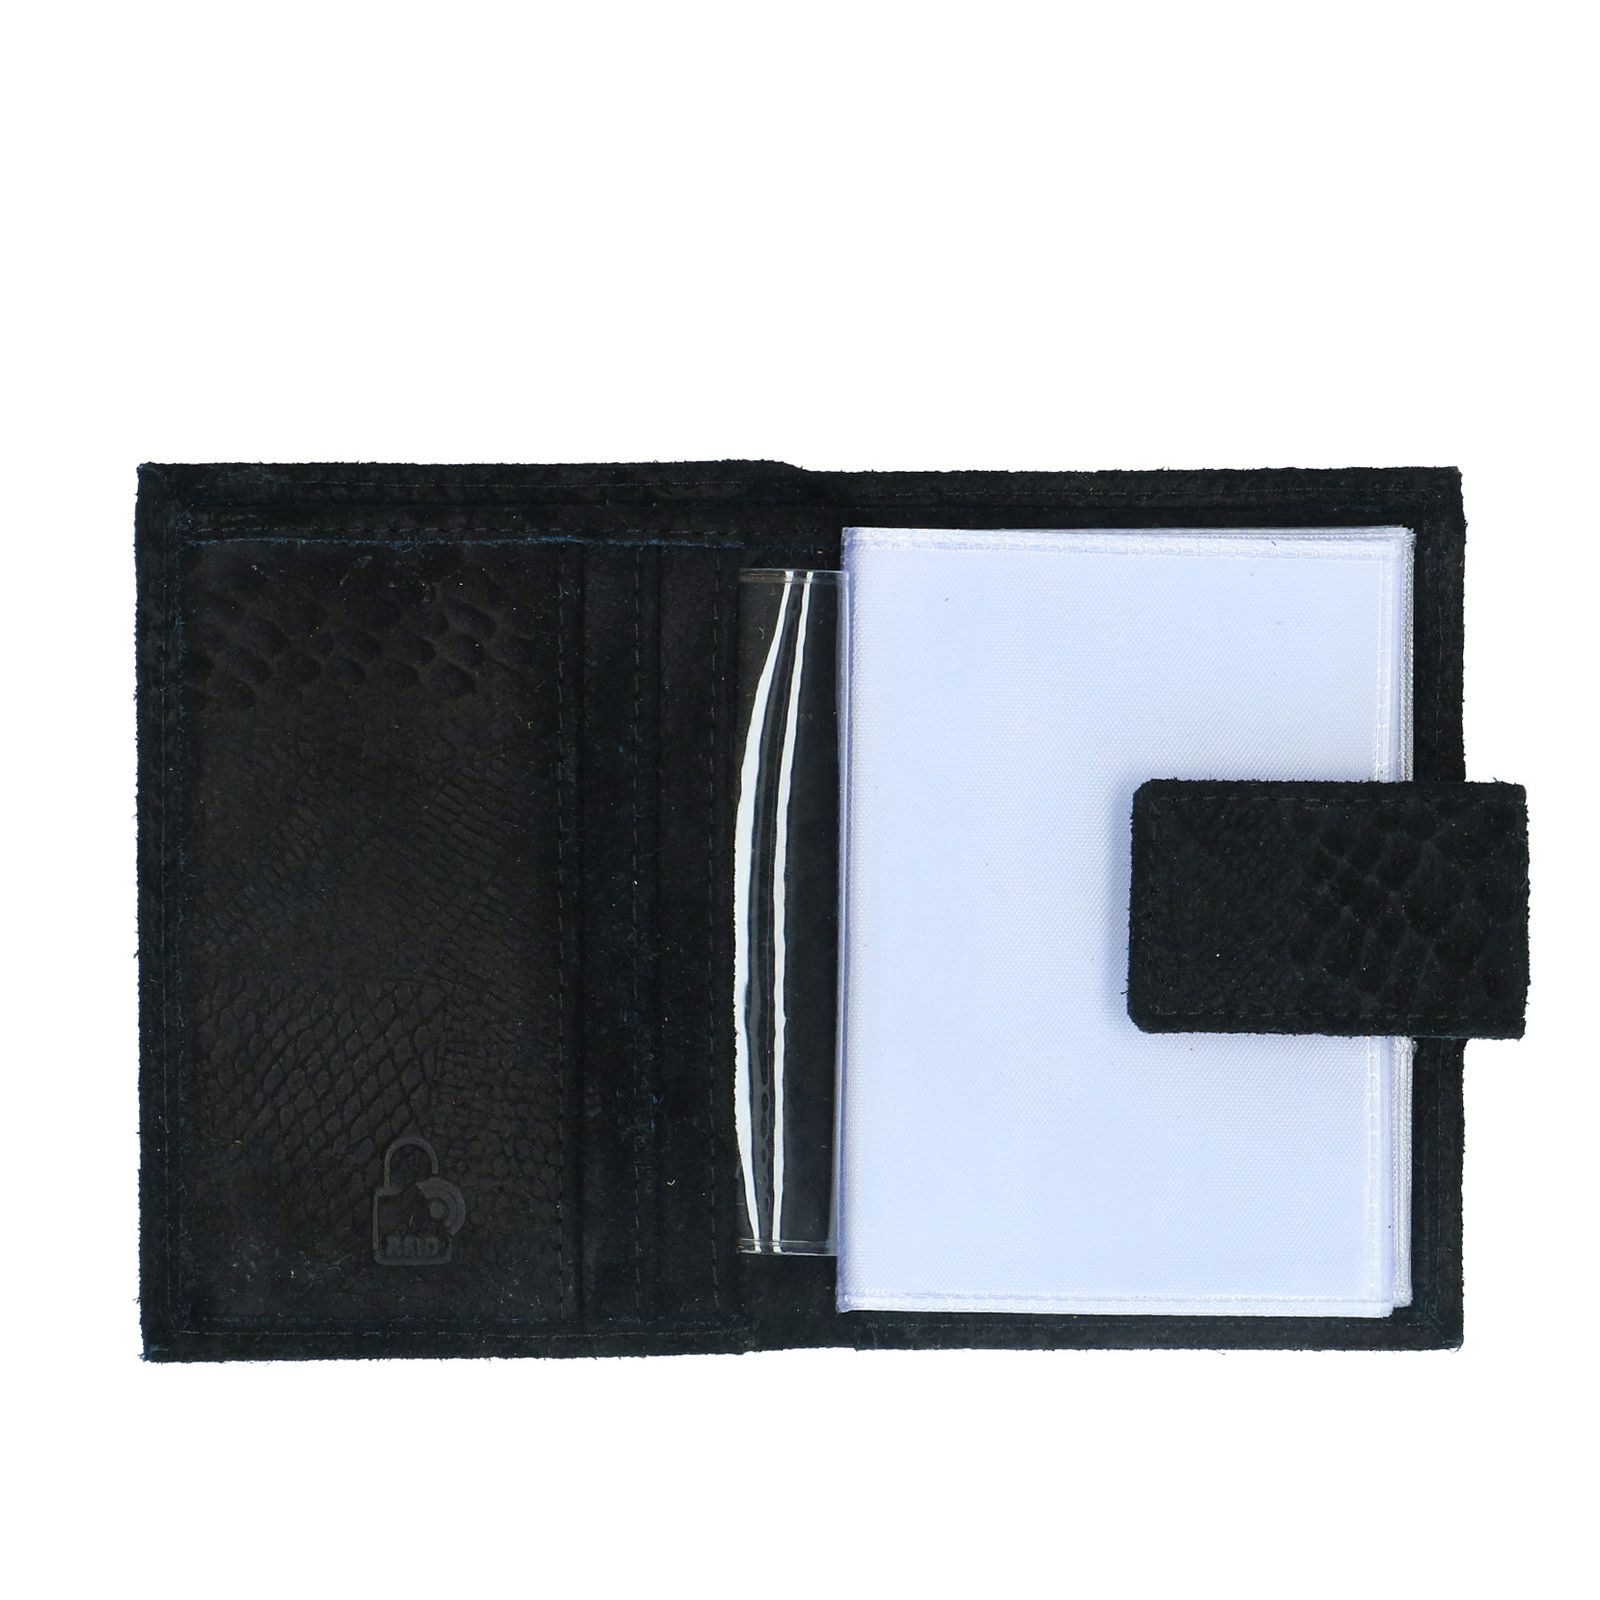 De lucht Klas Haarzelf Zwarte croco portemonnee - Accessoires | MANFIELD